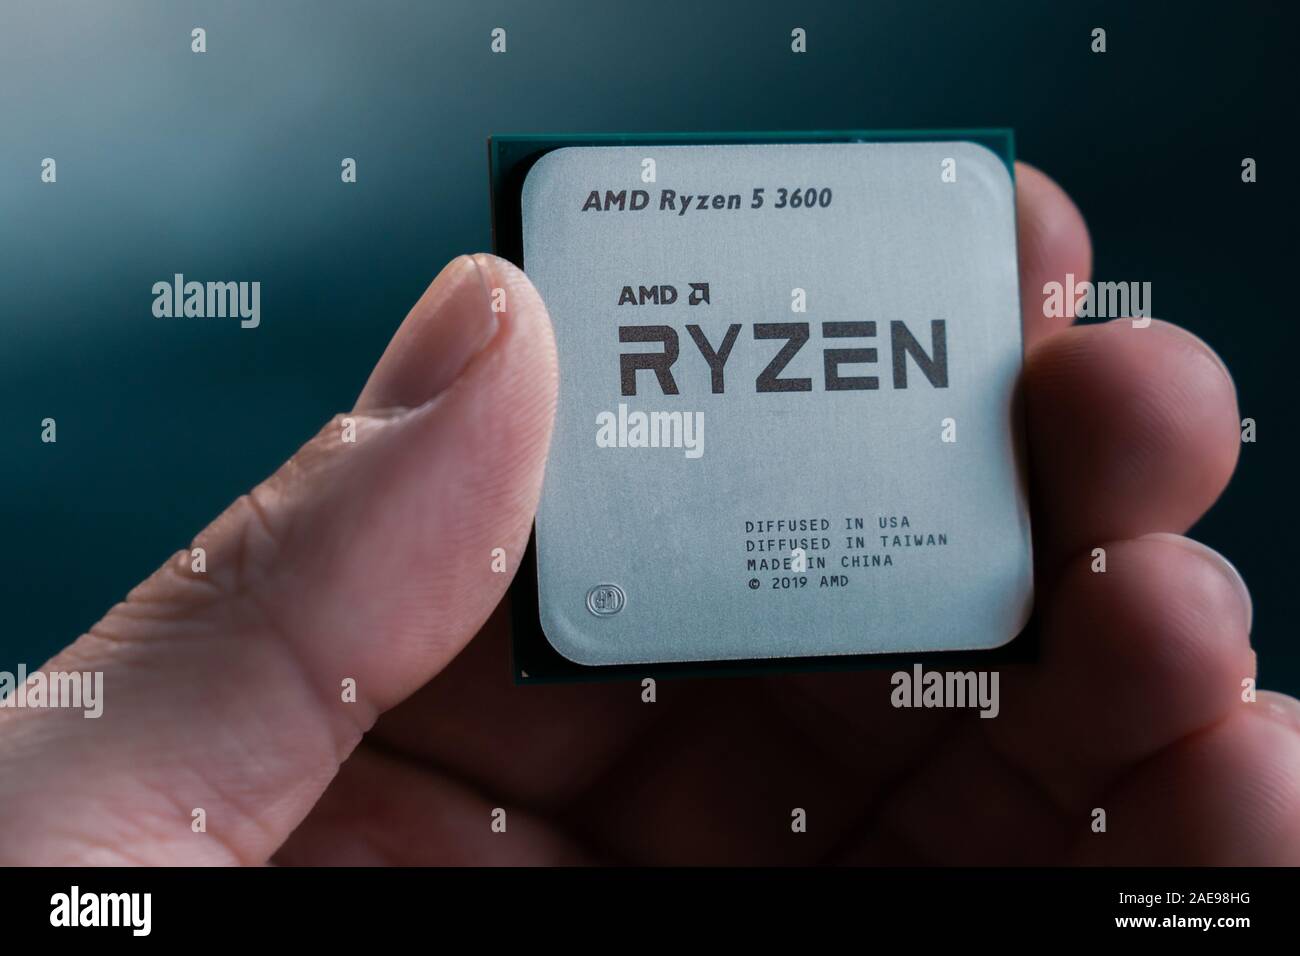 Ryzen 7 3700x Banque de photographies et d'images à haute résolution - Alamy